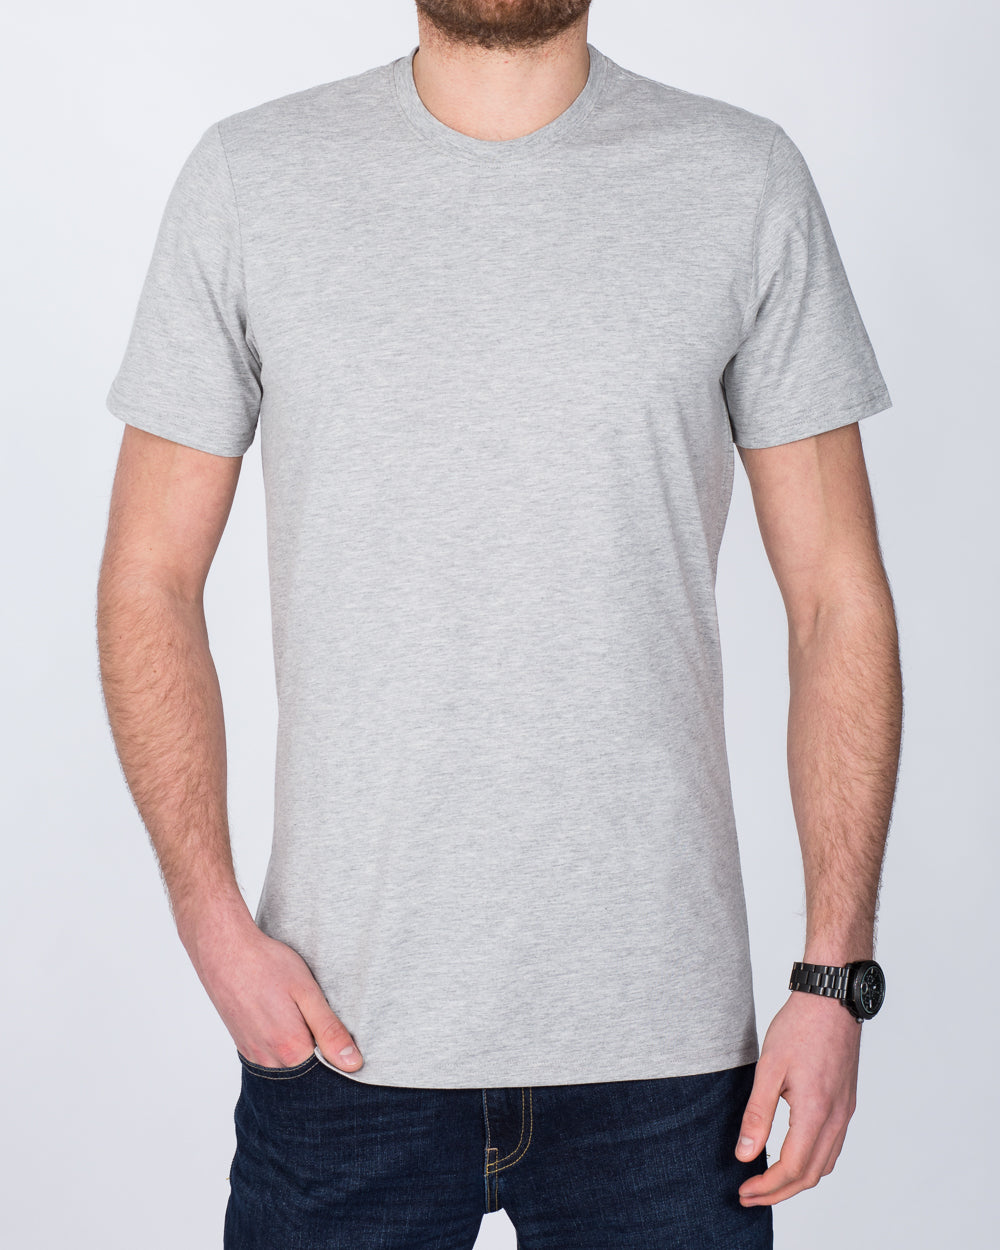 Girav Sydney Extra Tall T-Shirt (grey)